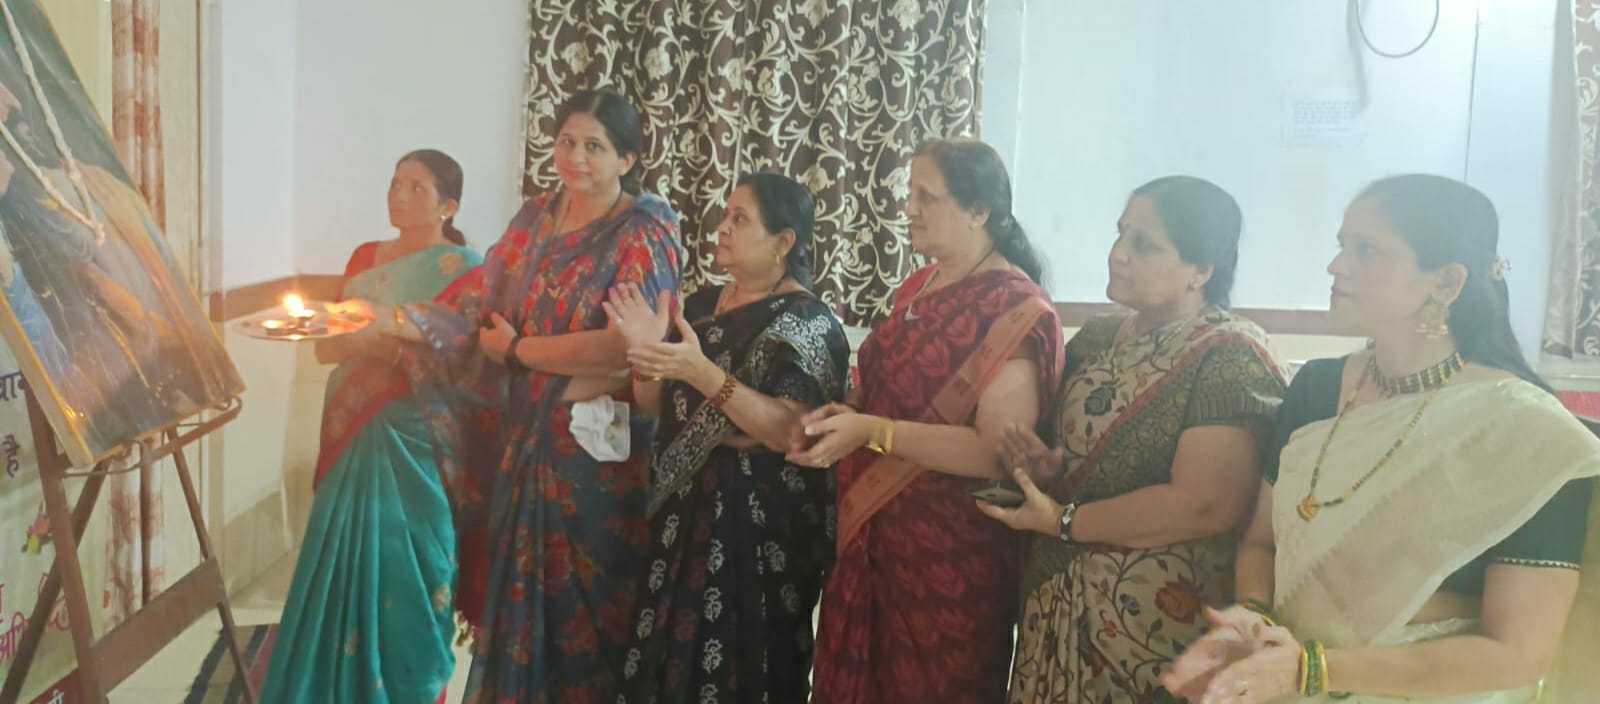 महाराष्ट्र मंडल में की गई छत्रपति शिवाजी की महाआरती, चौबे कालोनी केंद्र की महिलाओं ने की अगुवाई